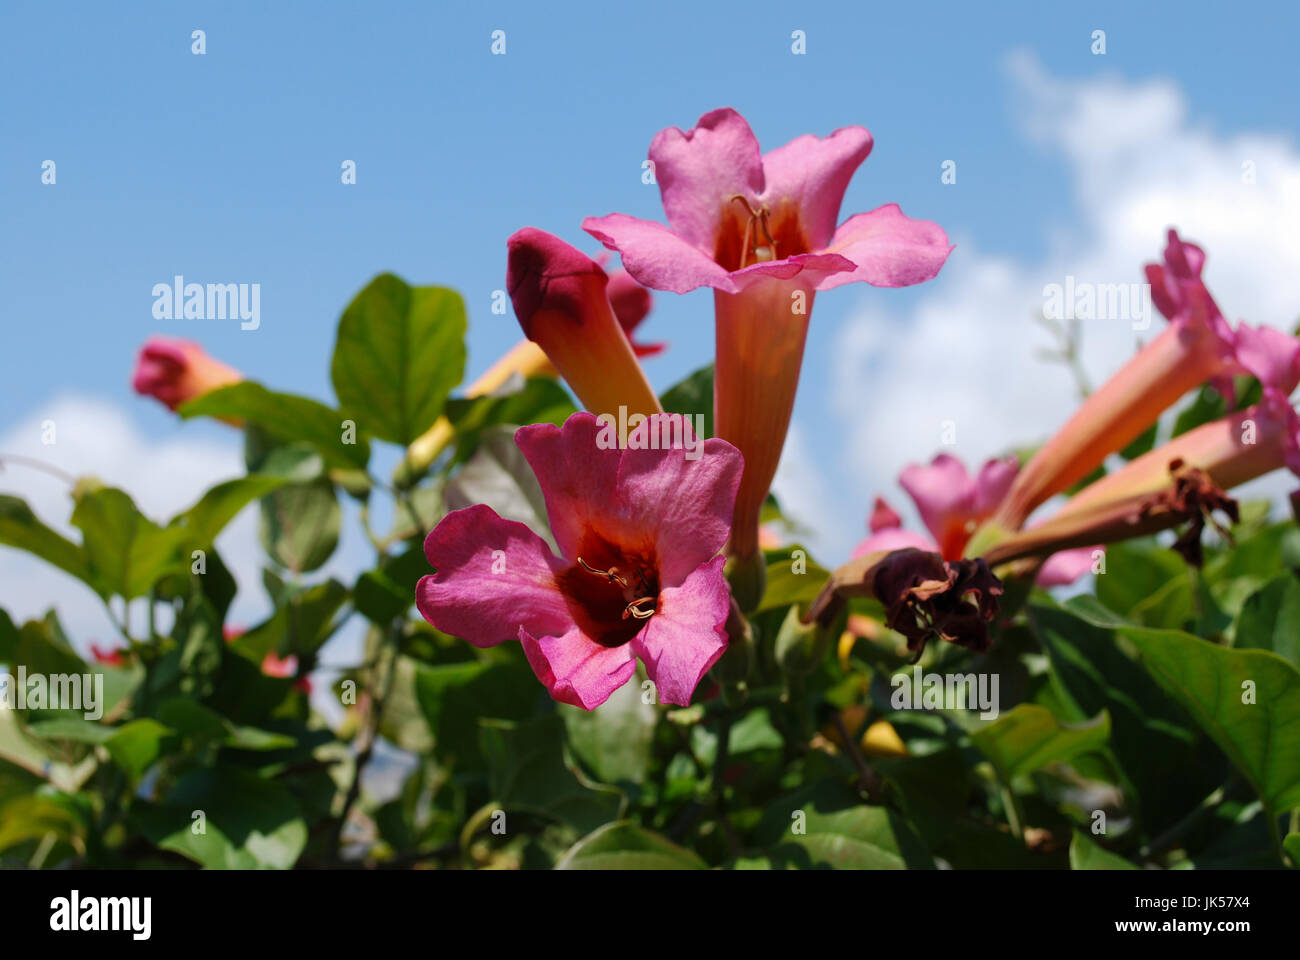 Bignonia Capreolata (Catalpa Familie) Rosa Blumen blühen auf dem Hintergrund des blauen Himmels. Stockfoto